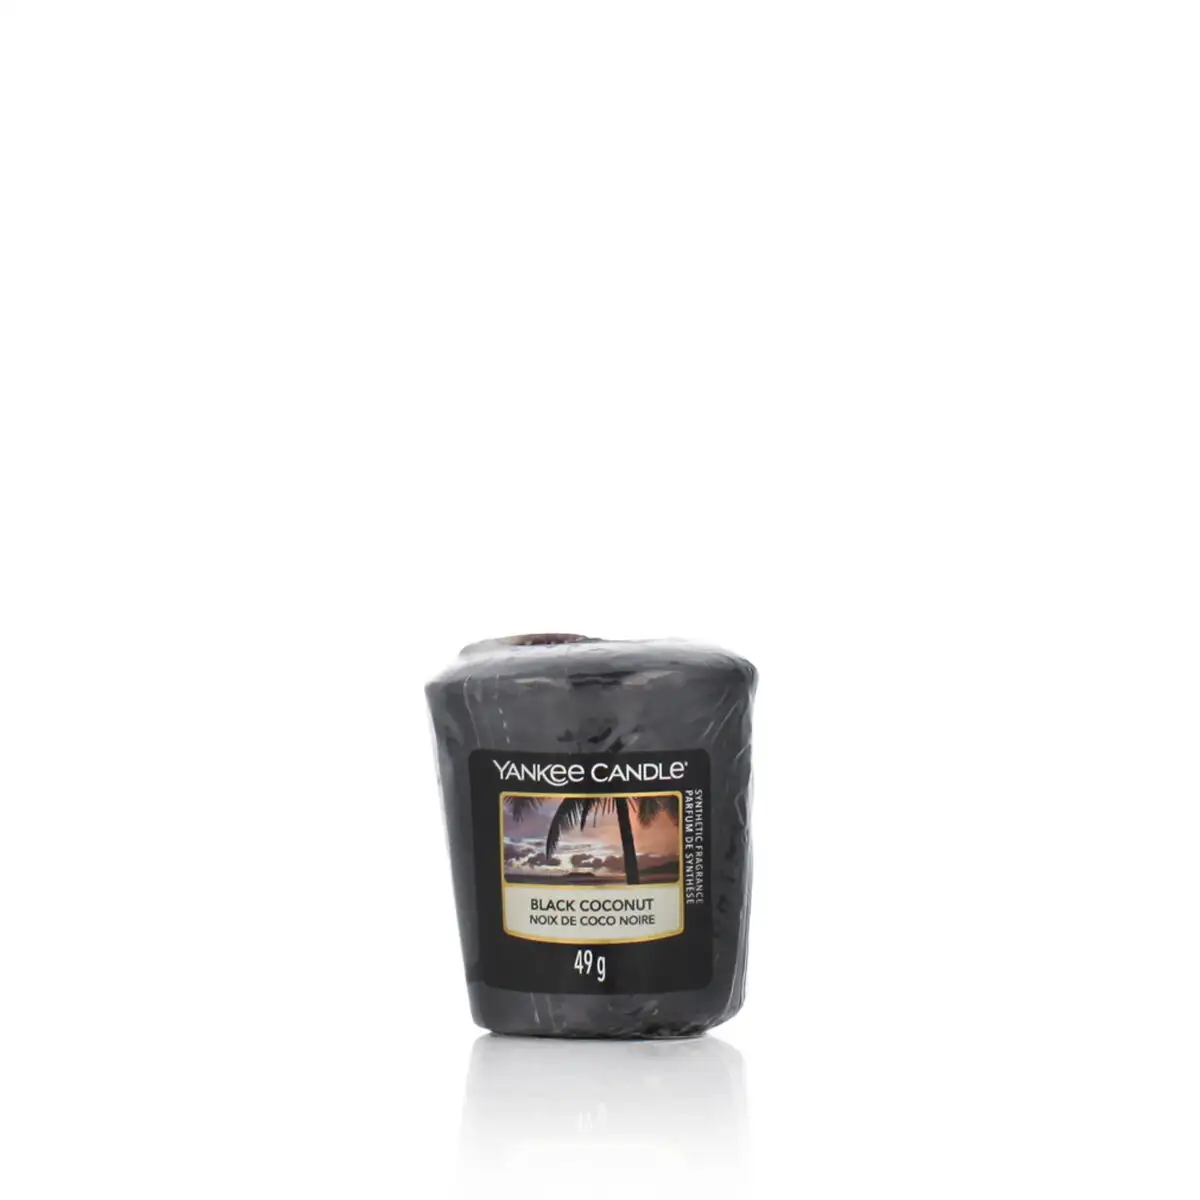 Bougie parfumee yankee candle black coconut 49 g_6570. Découvrez DIAYTAR SENEGAL - Où l'Élégance Rencontre la Variété. Parcourez notre collection et trouvez des trésors cachés qui ajoutent une touche de sophistication à votre vie quotidienne.